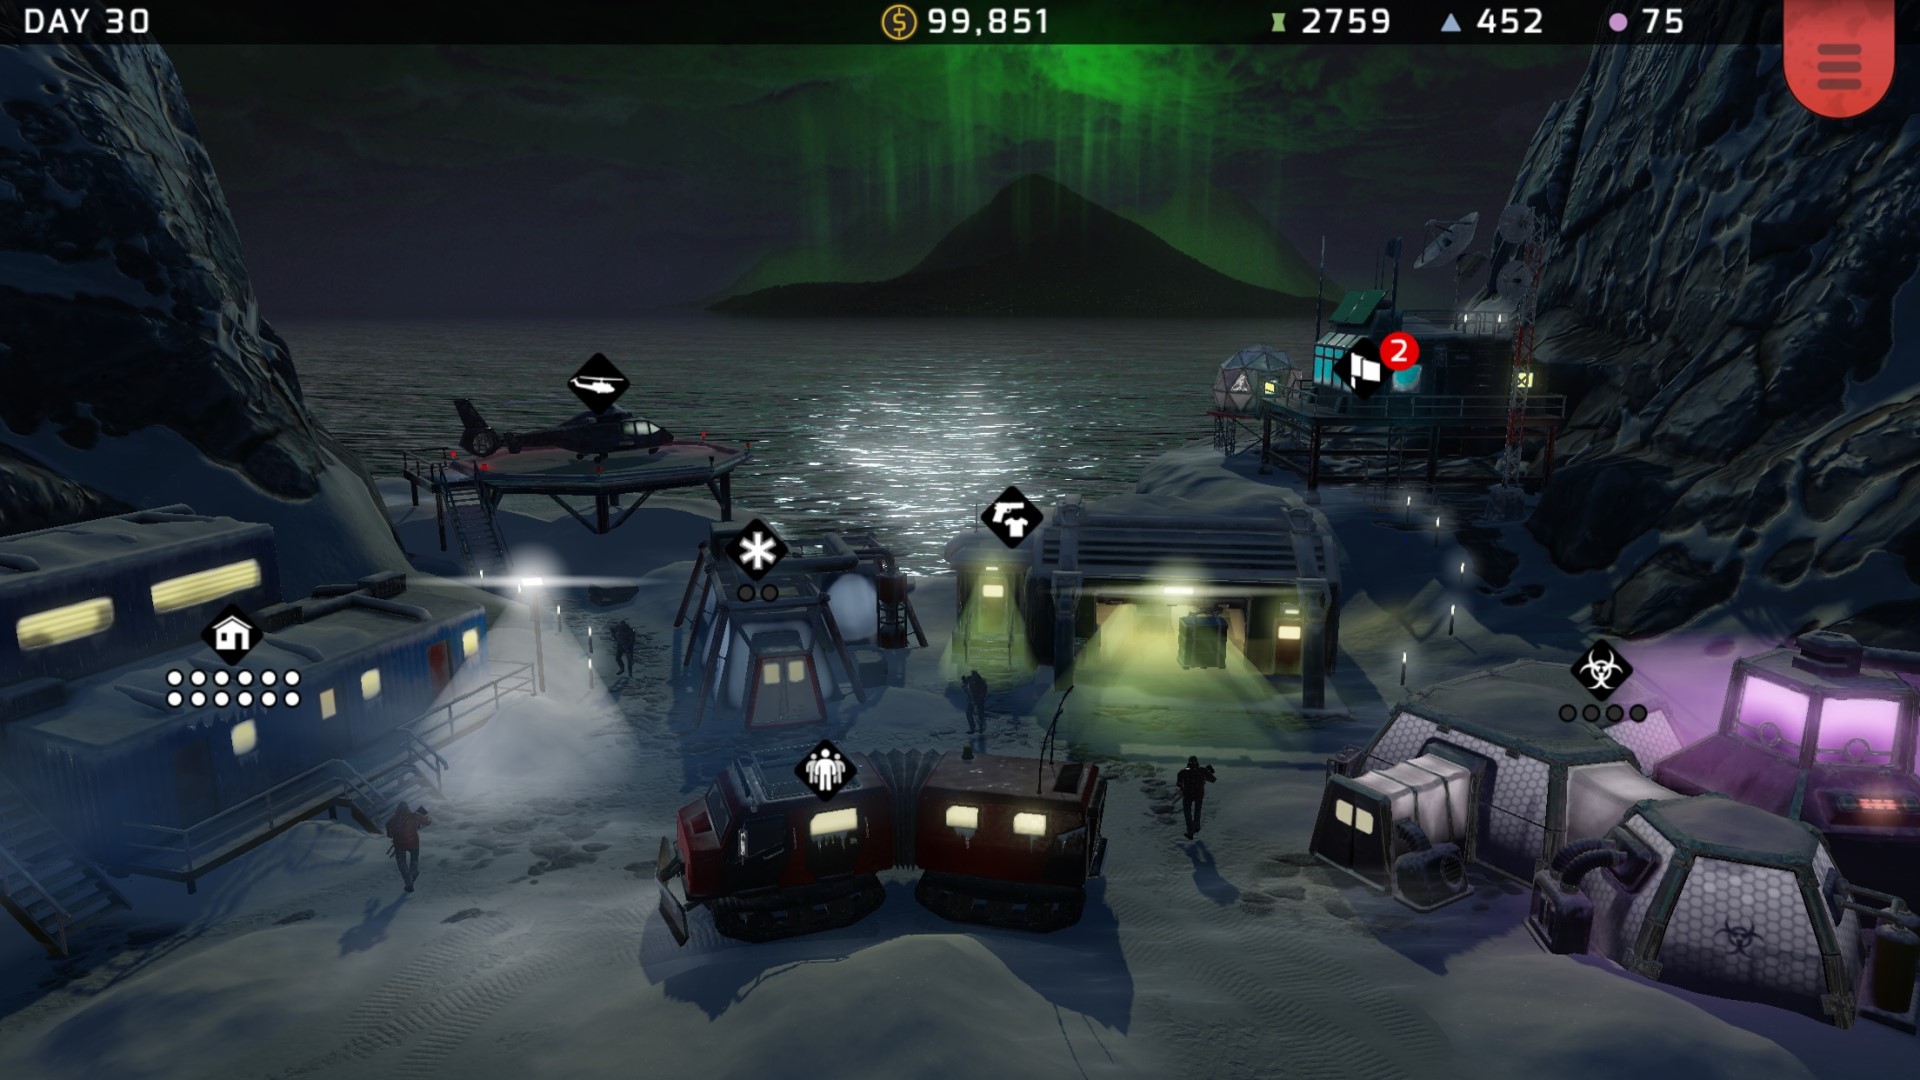 משחקי אסטרטגיה ניידים הטובים ביותר: טקטיקות Xenowerk. תמונה מציגה מבחר של כלי רכב צבאיים שיושבים לצד האוקיאנוס בלילה